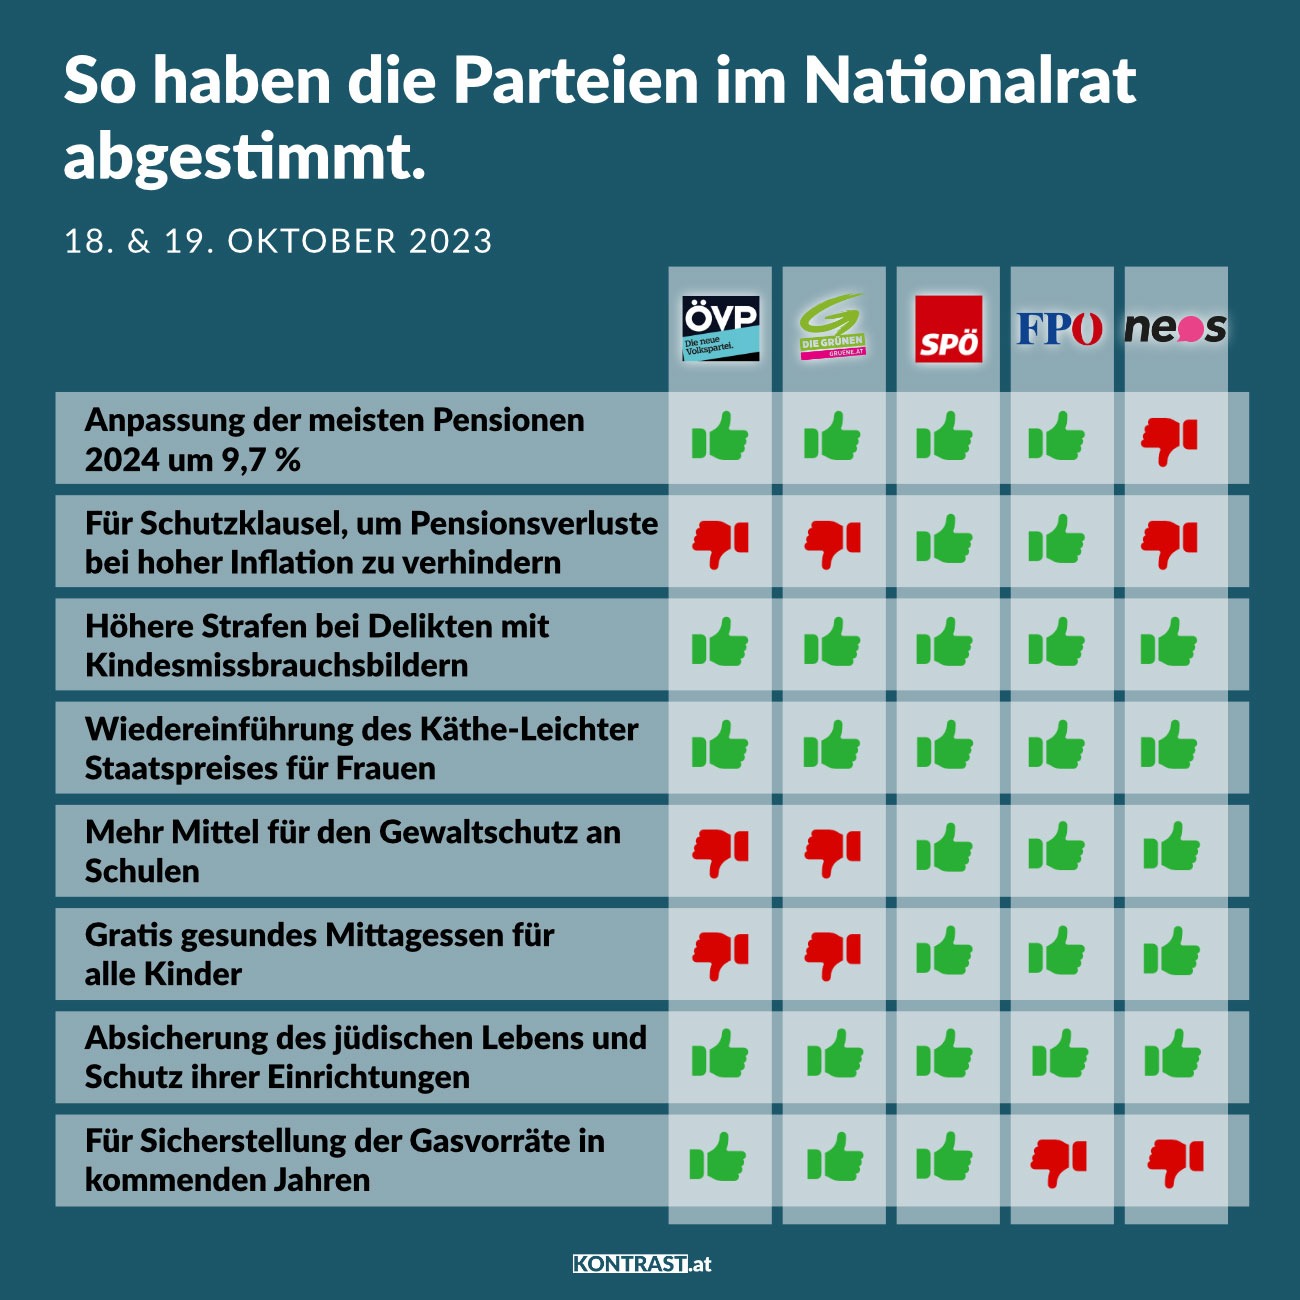 Nationalratssitzung am 18. und 19. Oktober 2023: So haben die Parteien abgestimmt